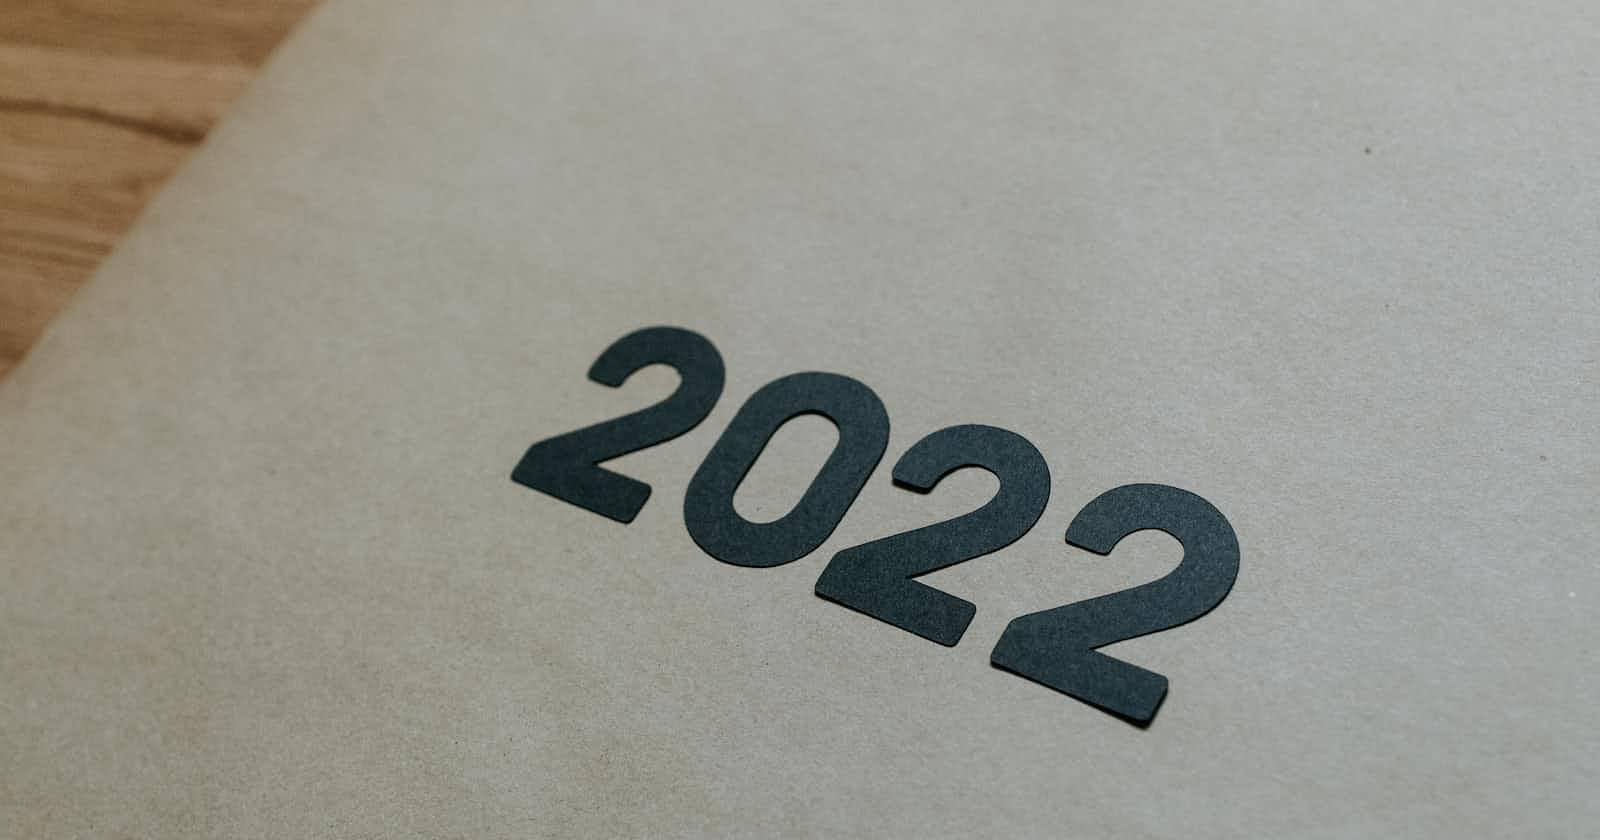 Dev Retro 2022: A Walk through 2022